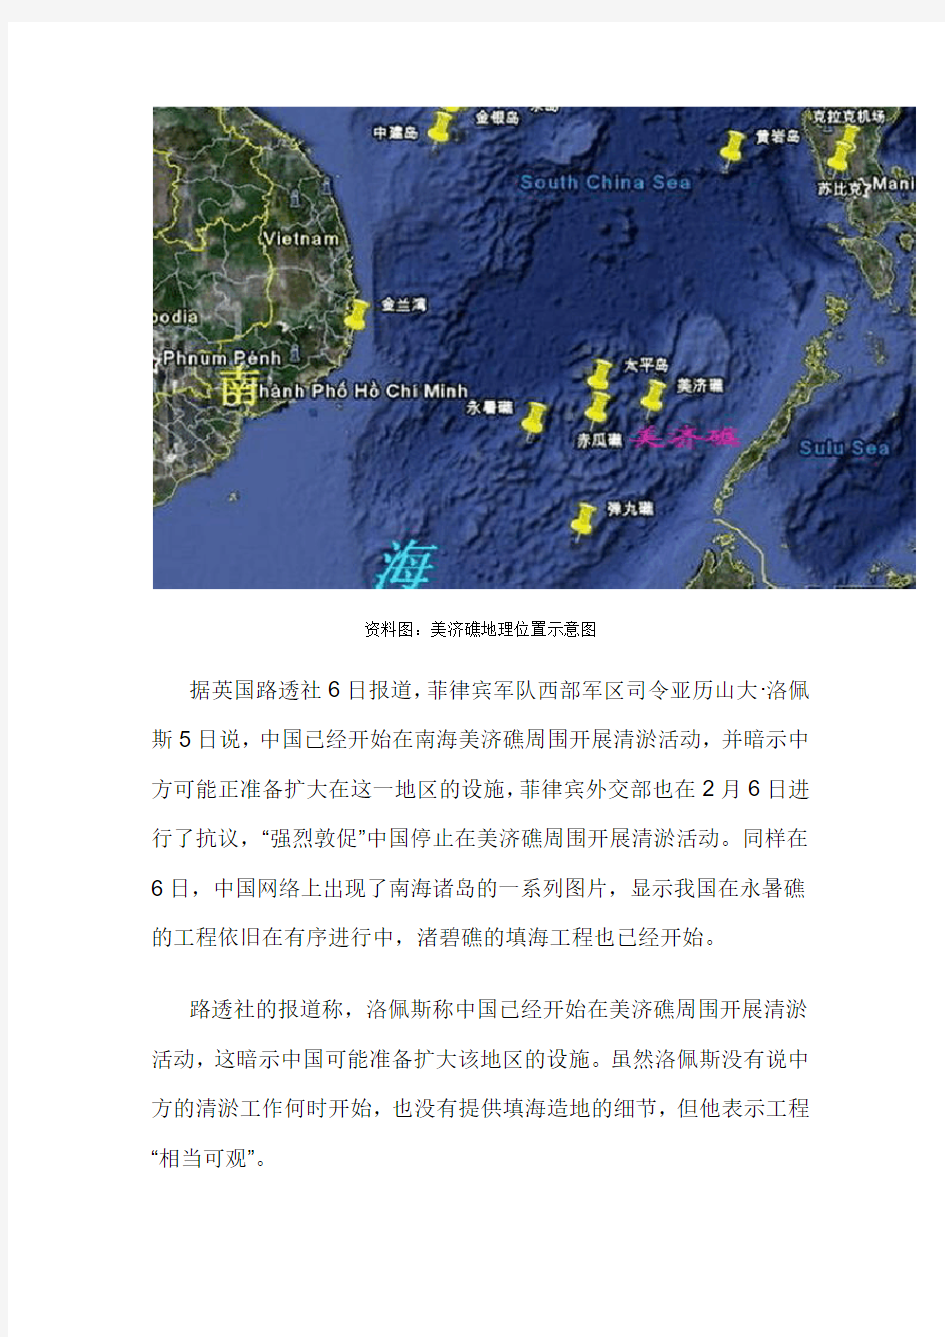 中国南海又一礁开工填海 现15万平米新陆地